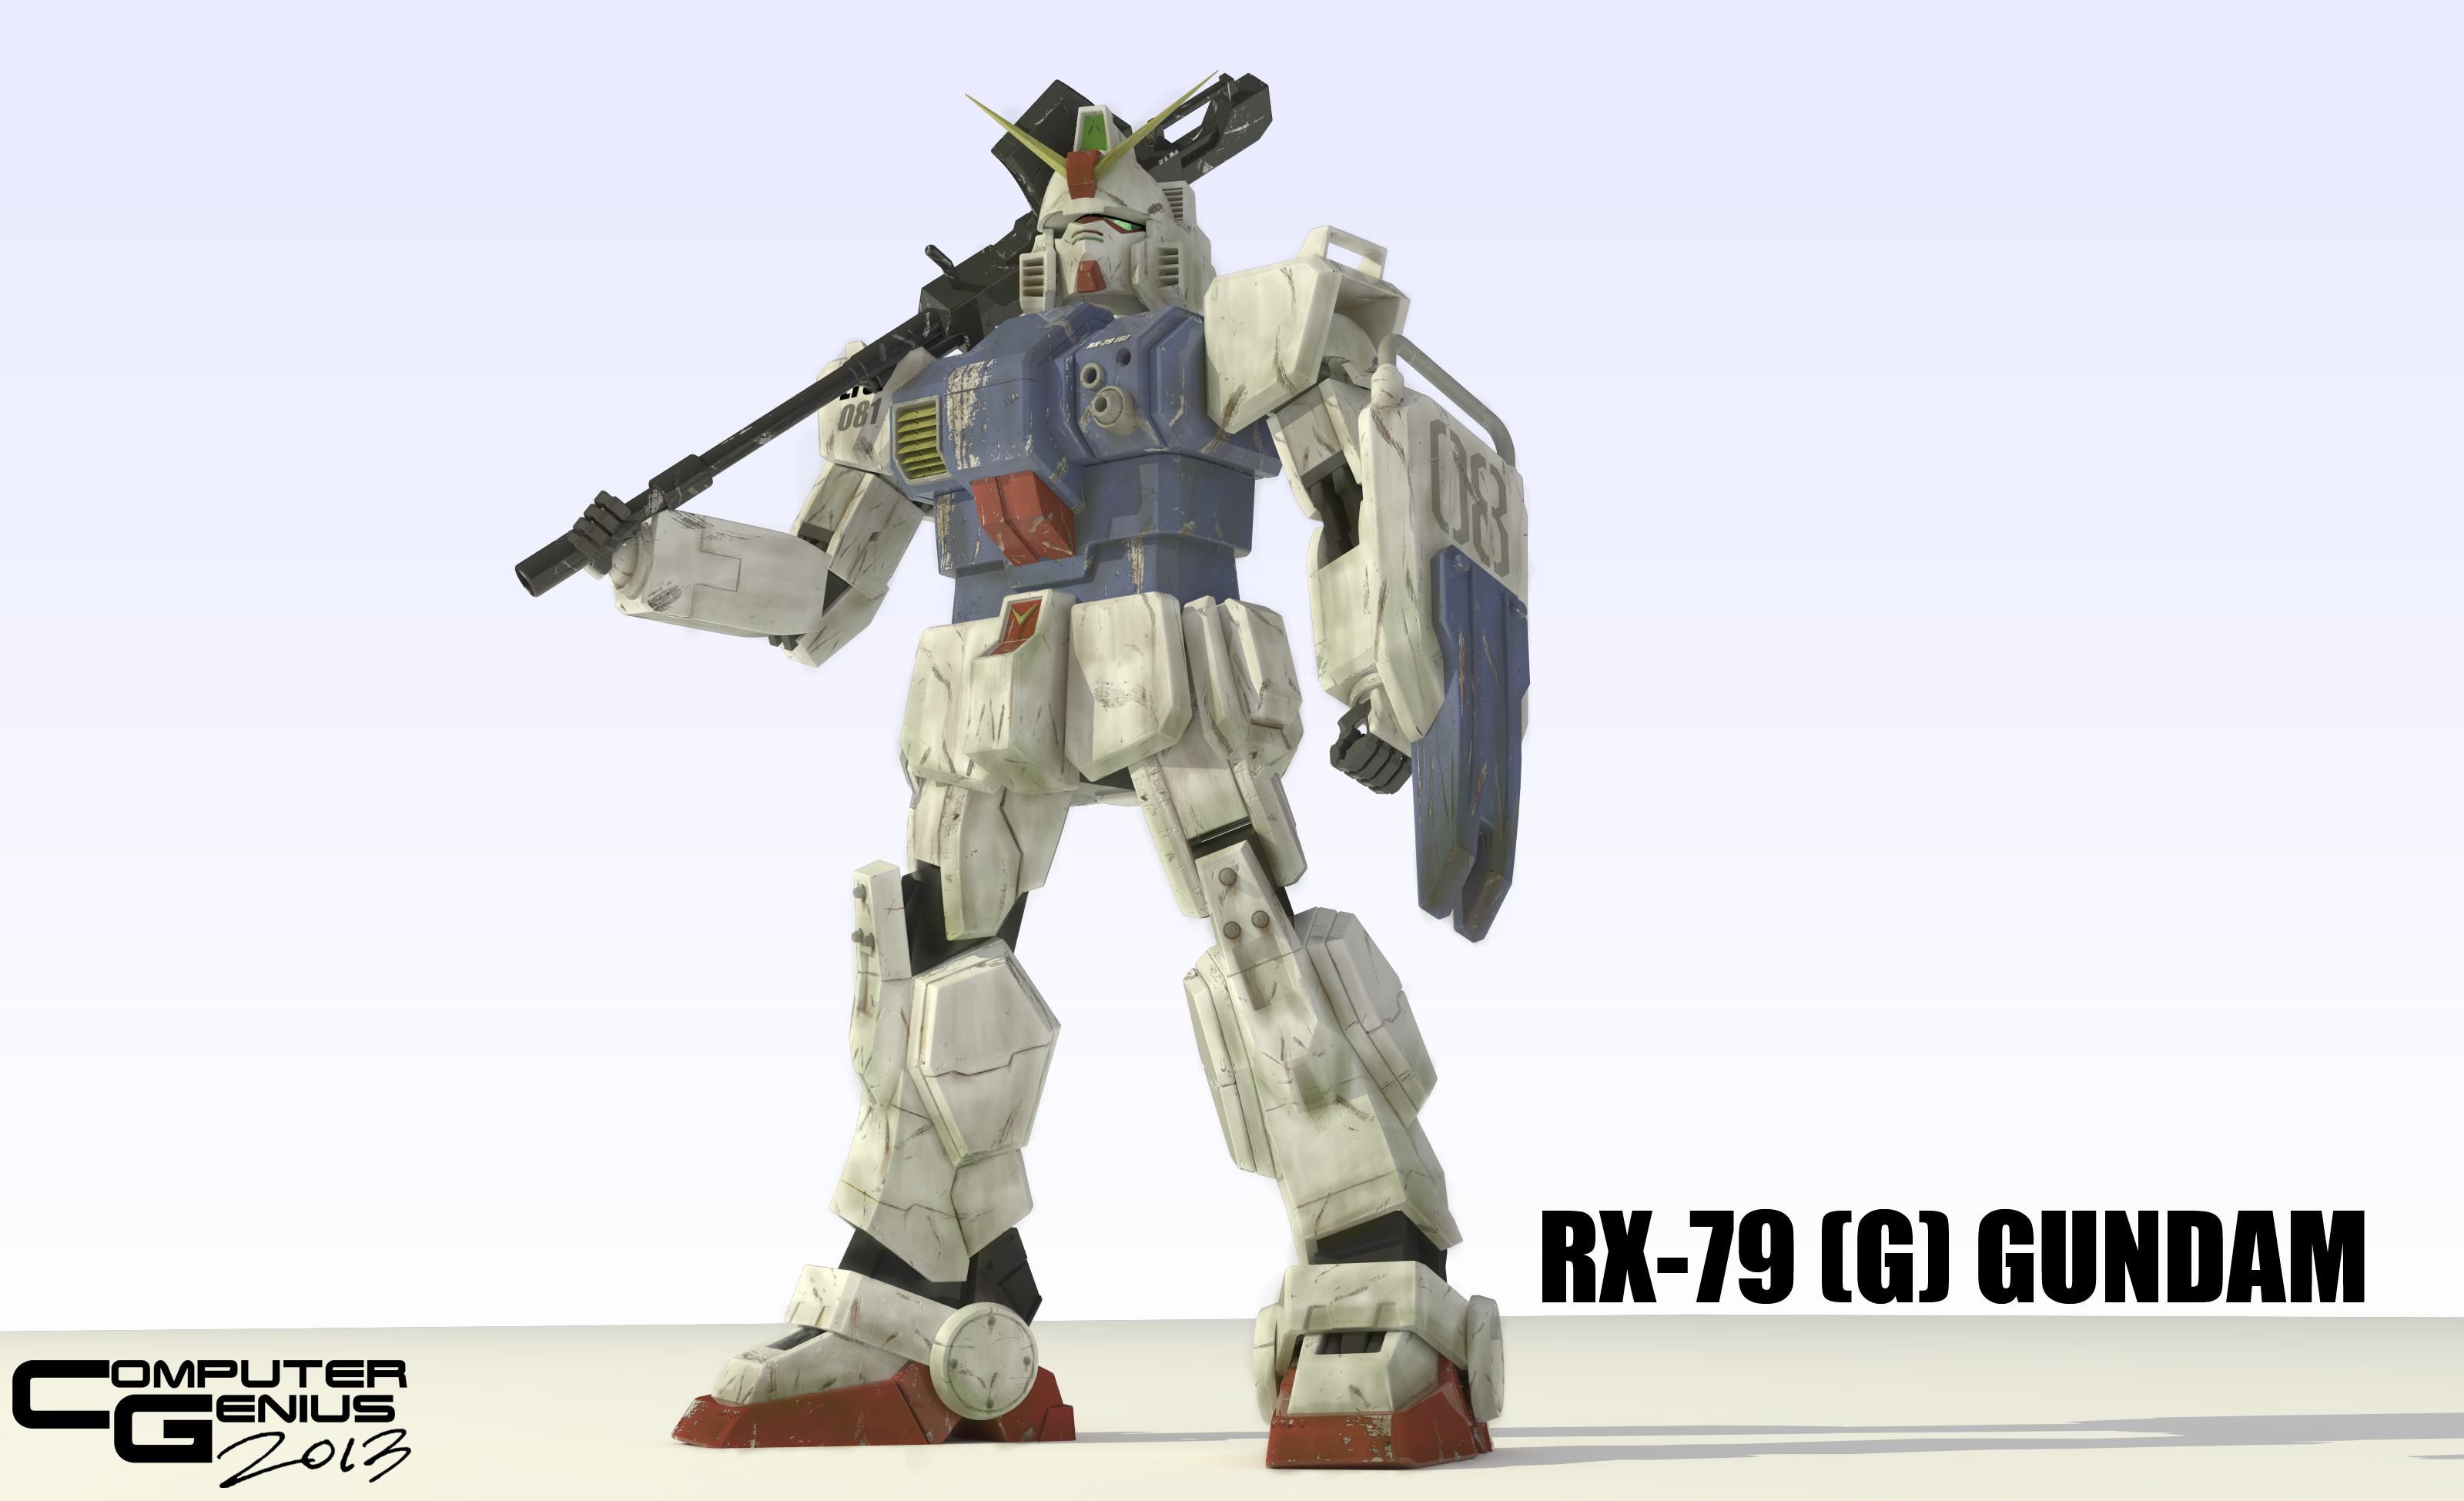 3200x1949 ... RX-79 (G) Gundam by ComputerGenius